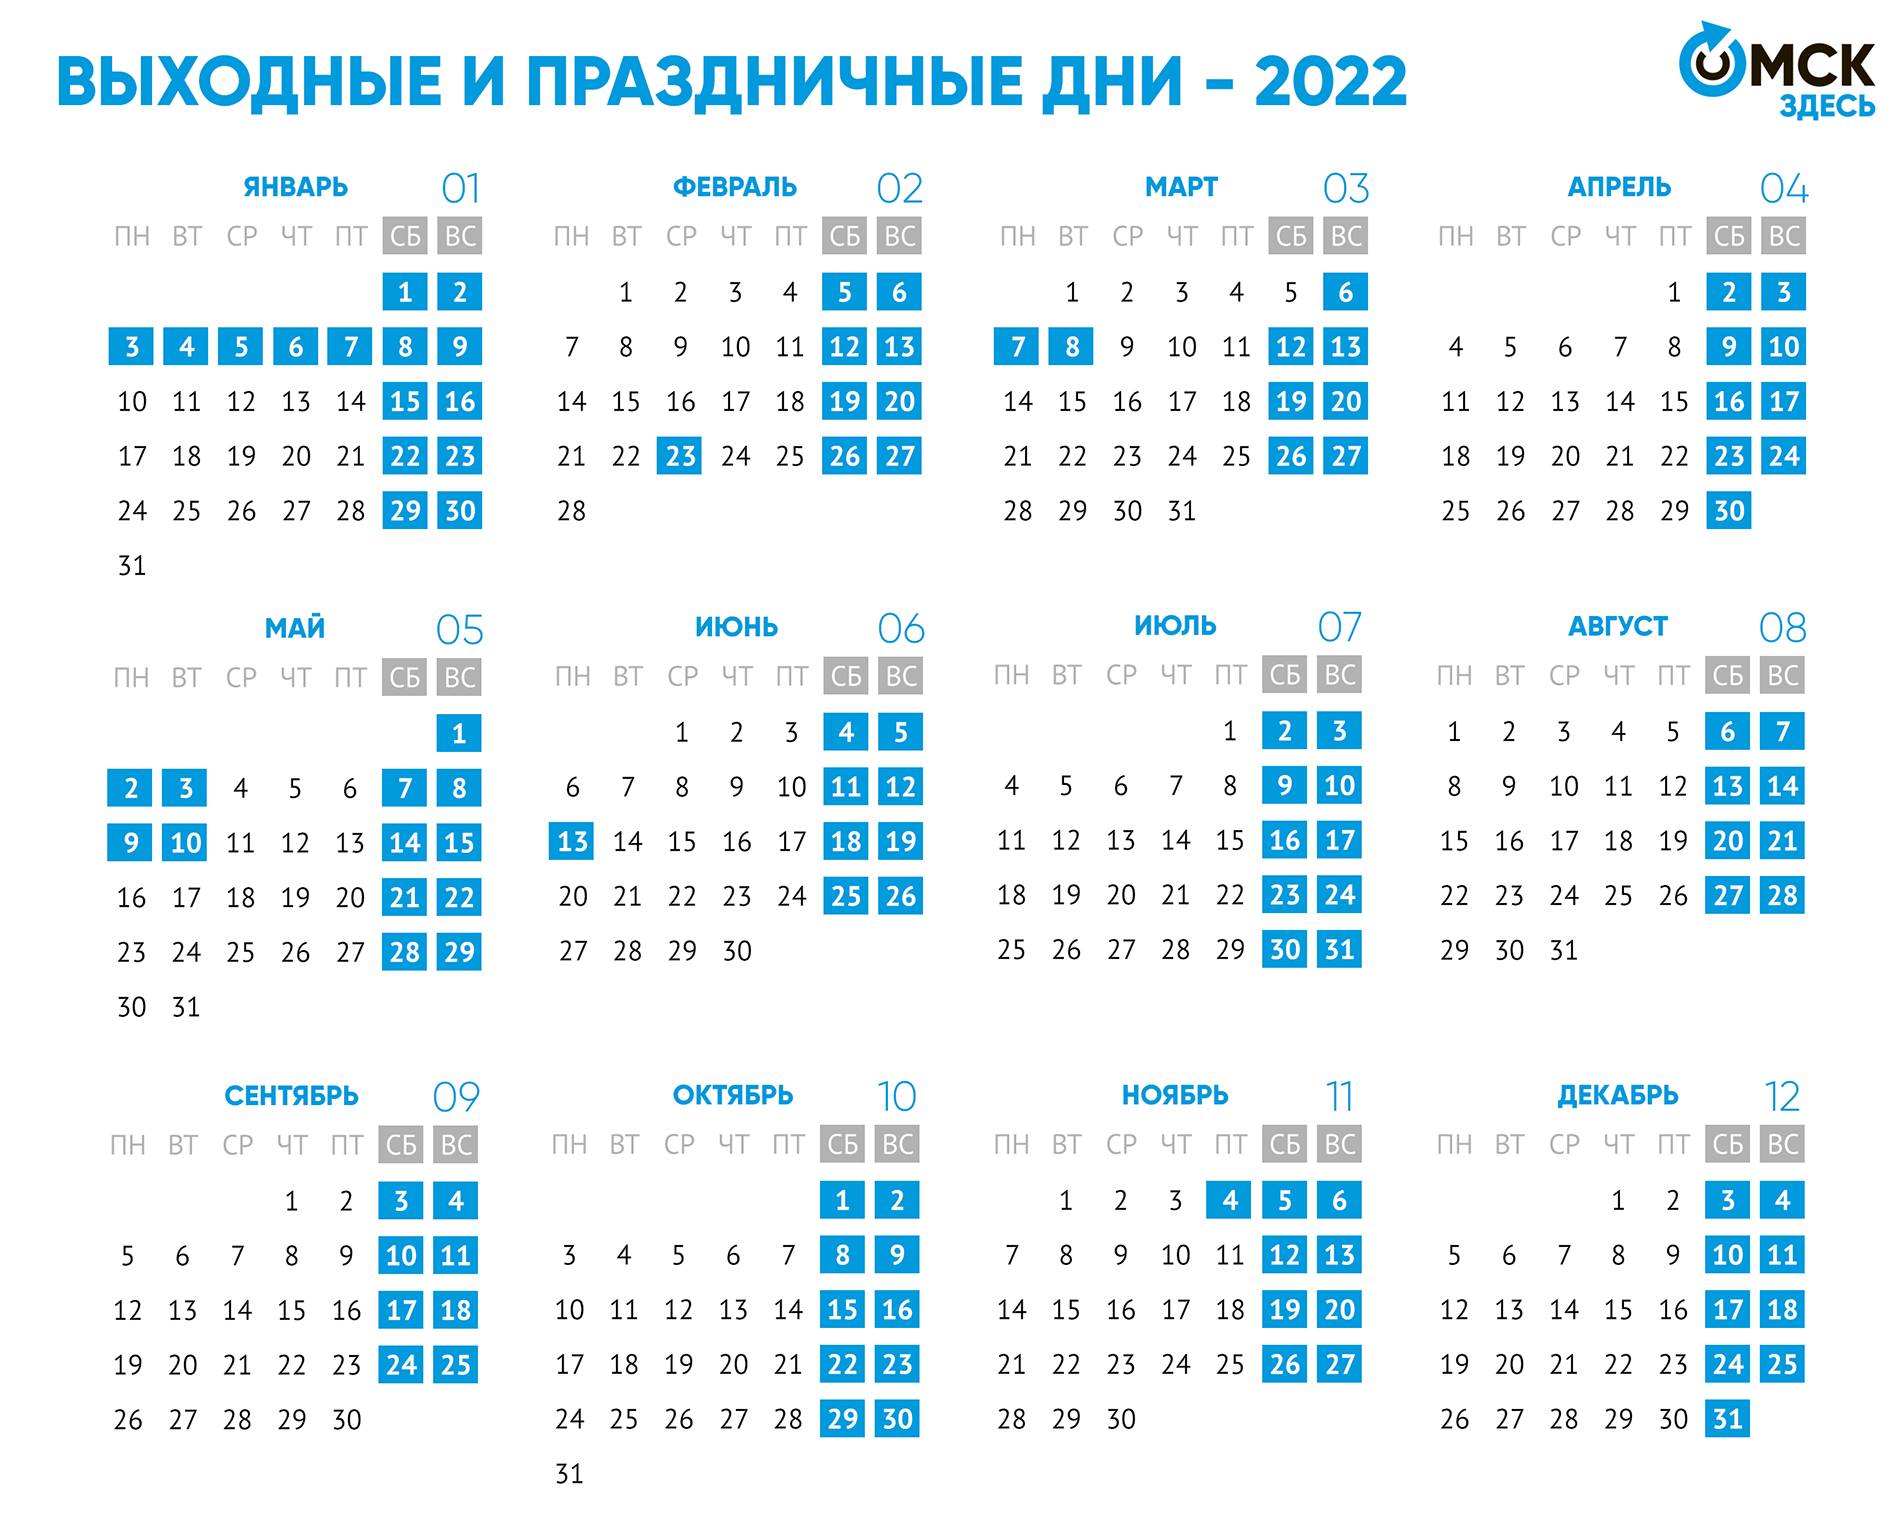 Новогодние Каникулы 2021 2022